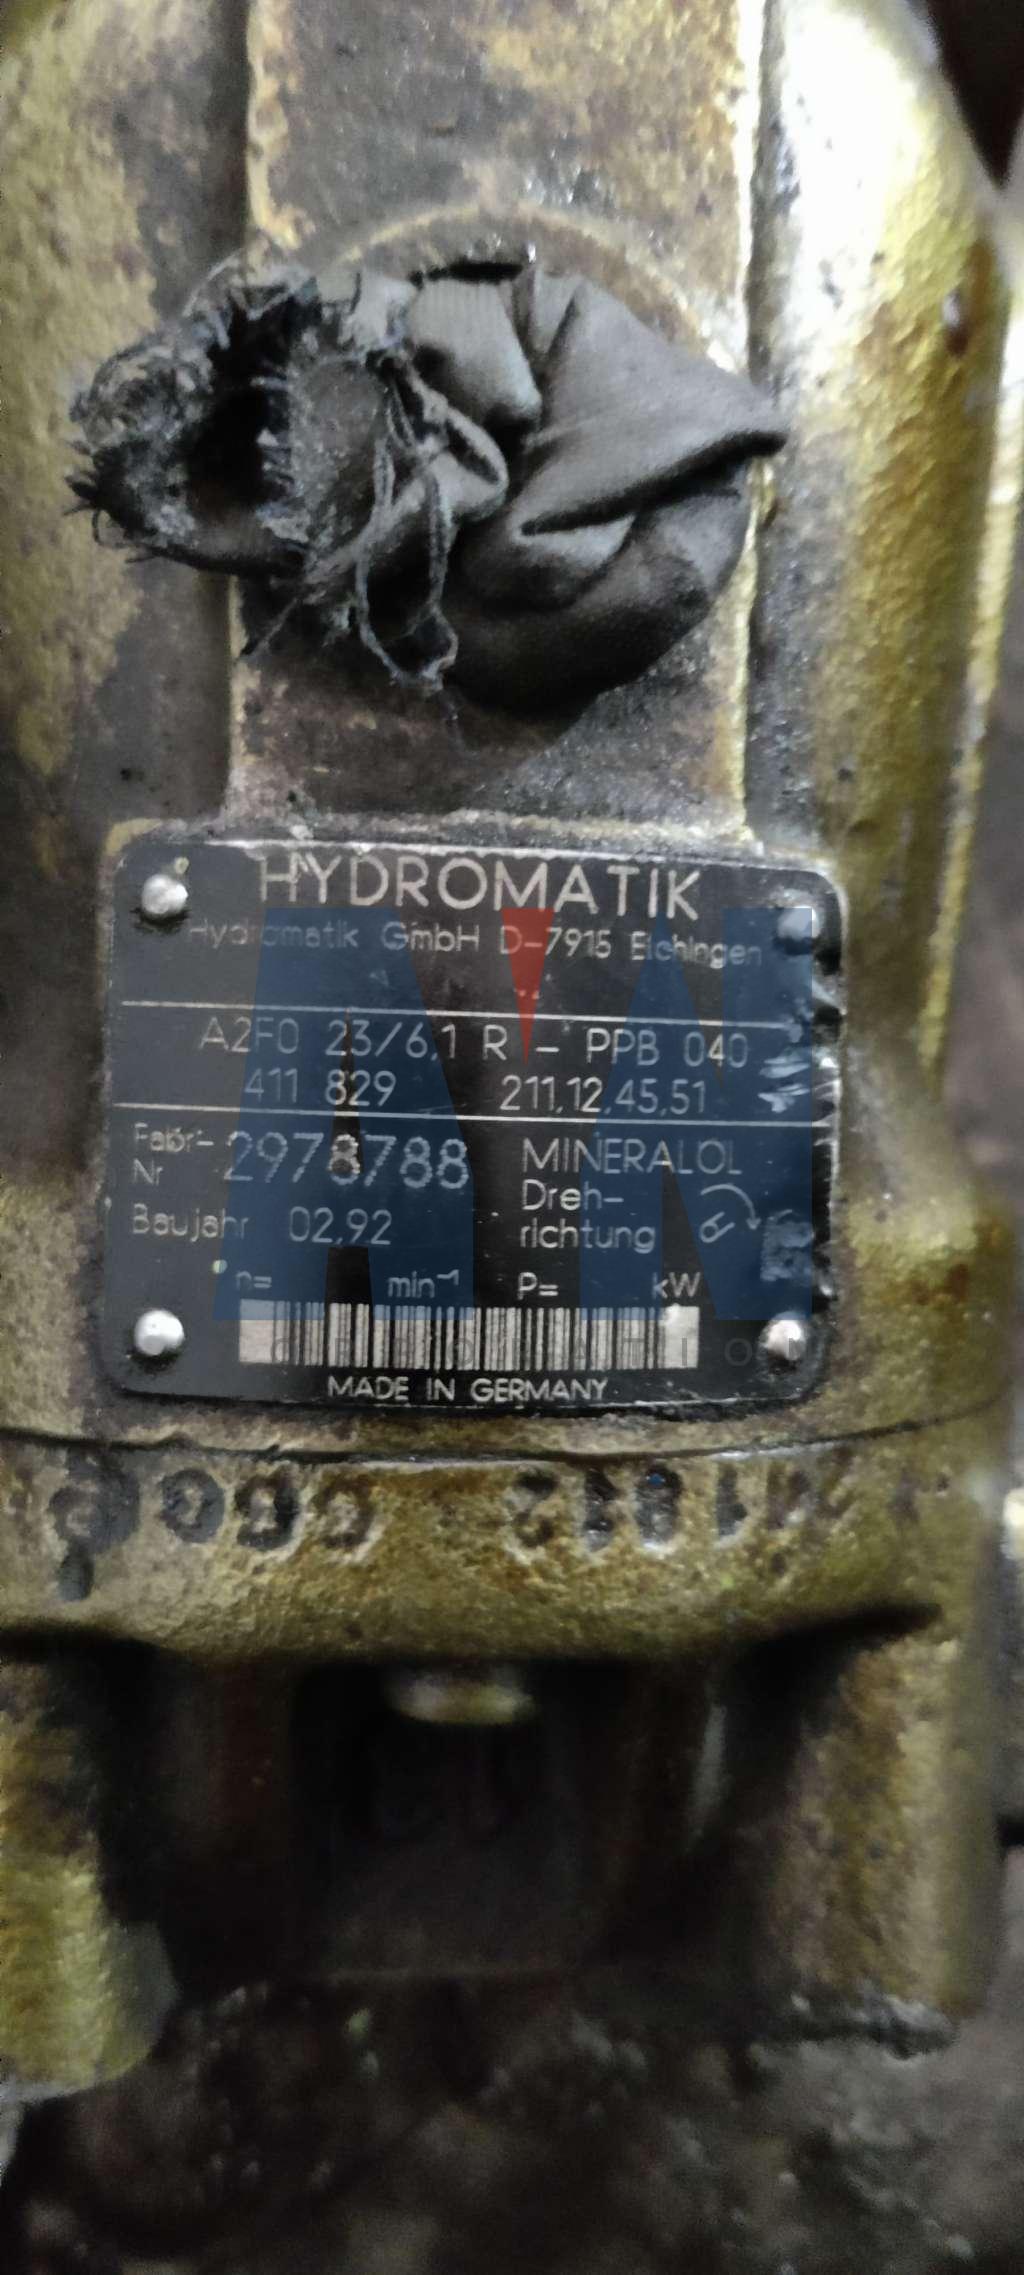 Hydromatik A2F0 23/61R-PPB 040 Hydraulic pump 